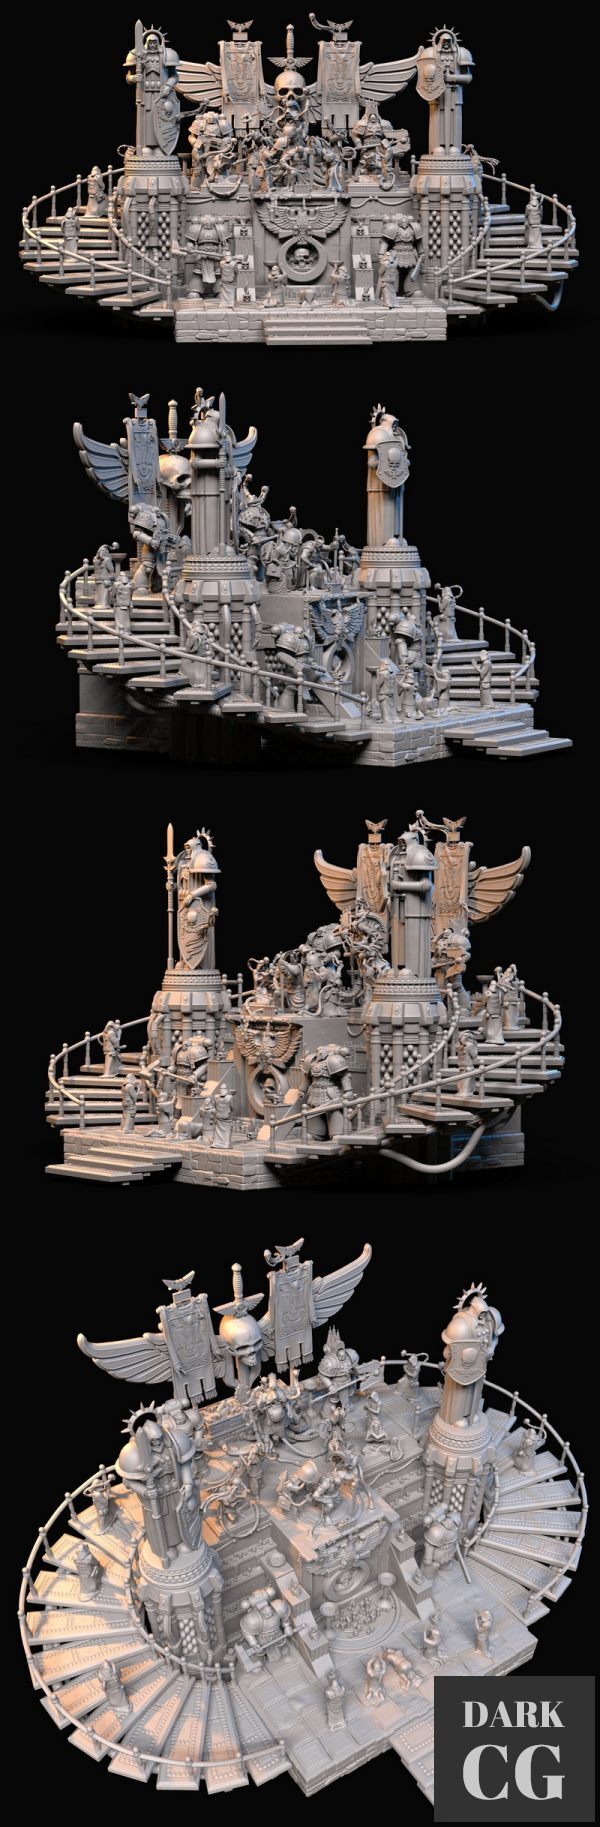 Warhammer 40k Diorama